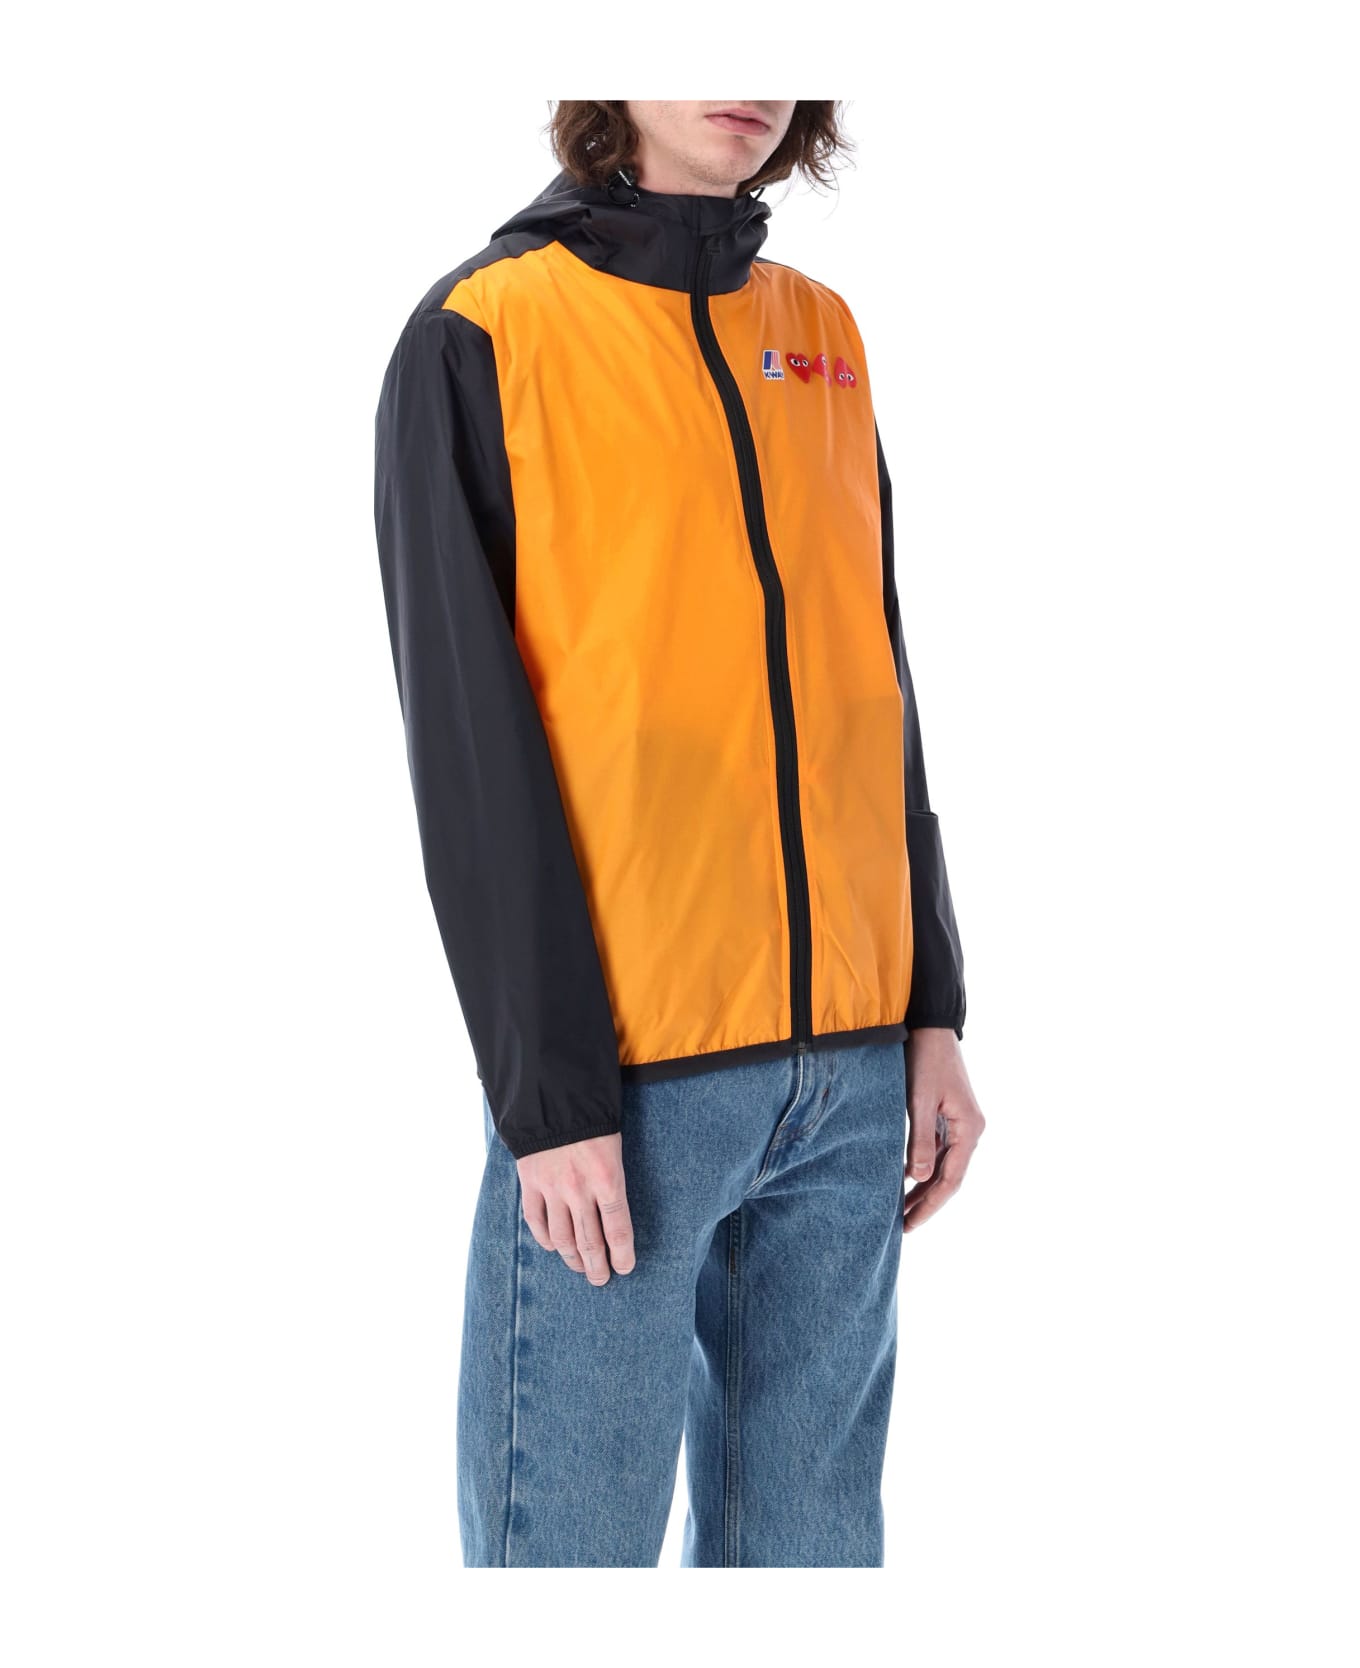 Comme des Garçons Play Bicolor Waterproof Zip Jacket With Hood - ORANGE BLACK ジャケット